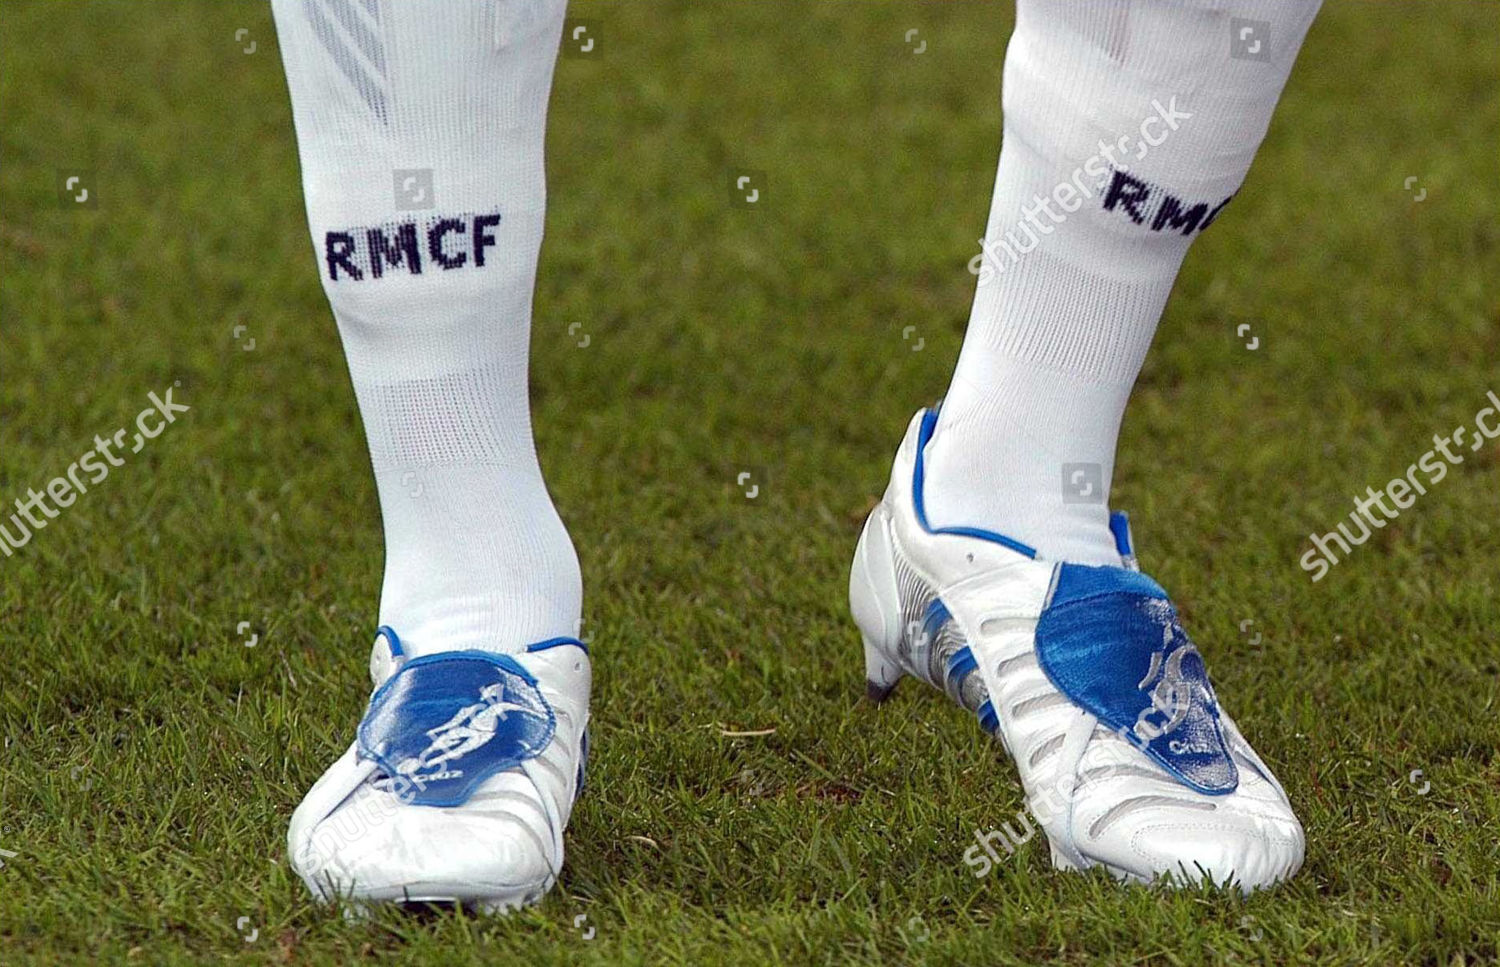 beckham football boots